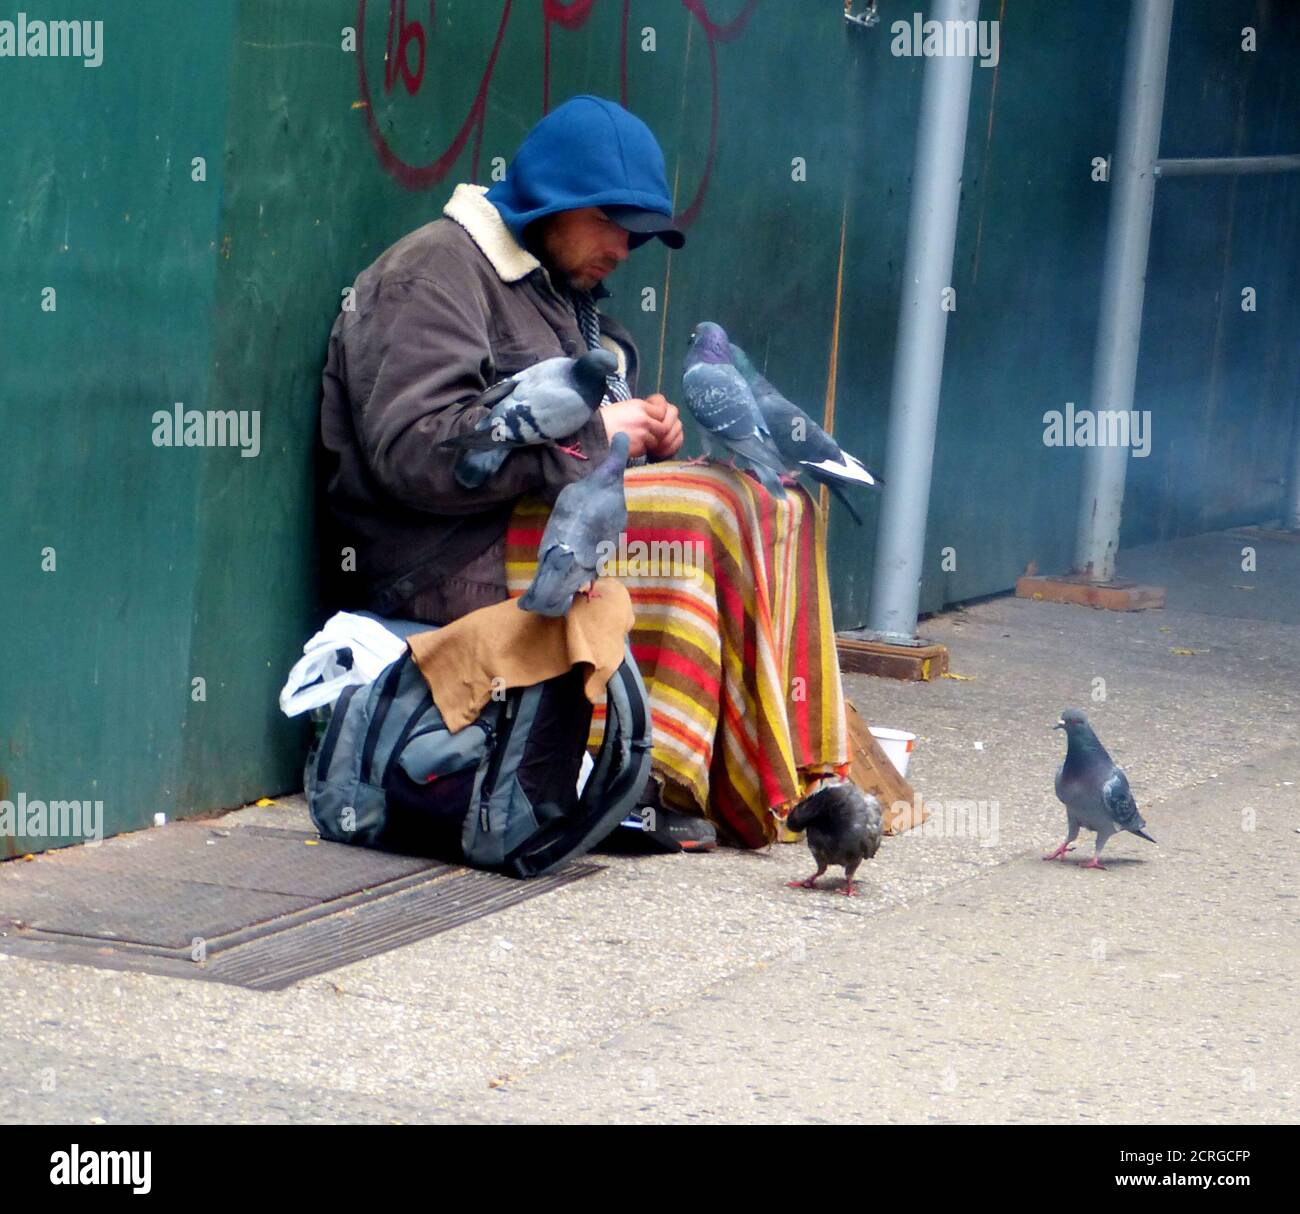 L'homme sans abri nourrit les colombes d'oiseaux. Tristes bum dans la rue de New York. Mendiant malheureux. La pauvreté. Compassion. Tristesse. Problème social. Banque D'Images